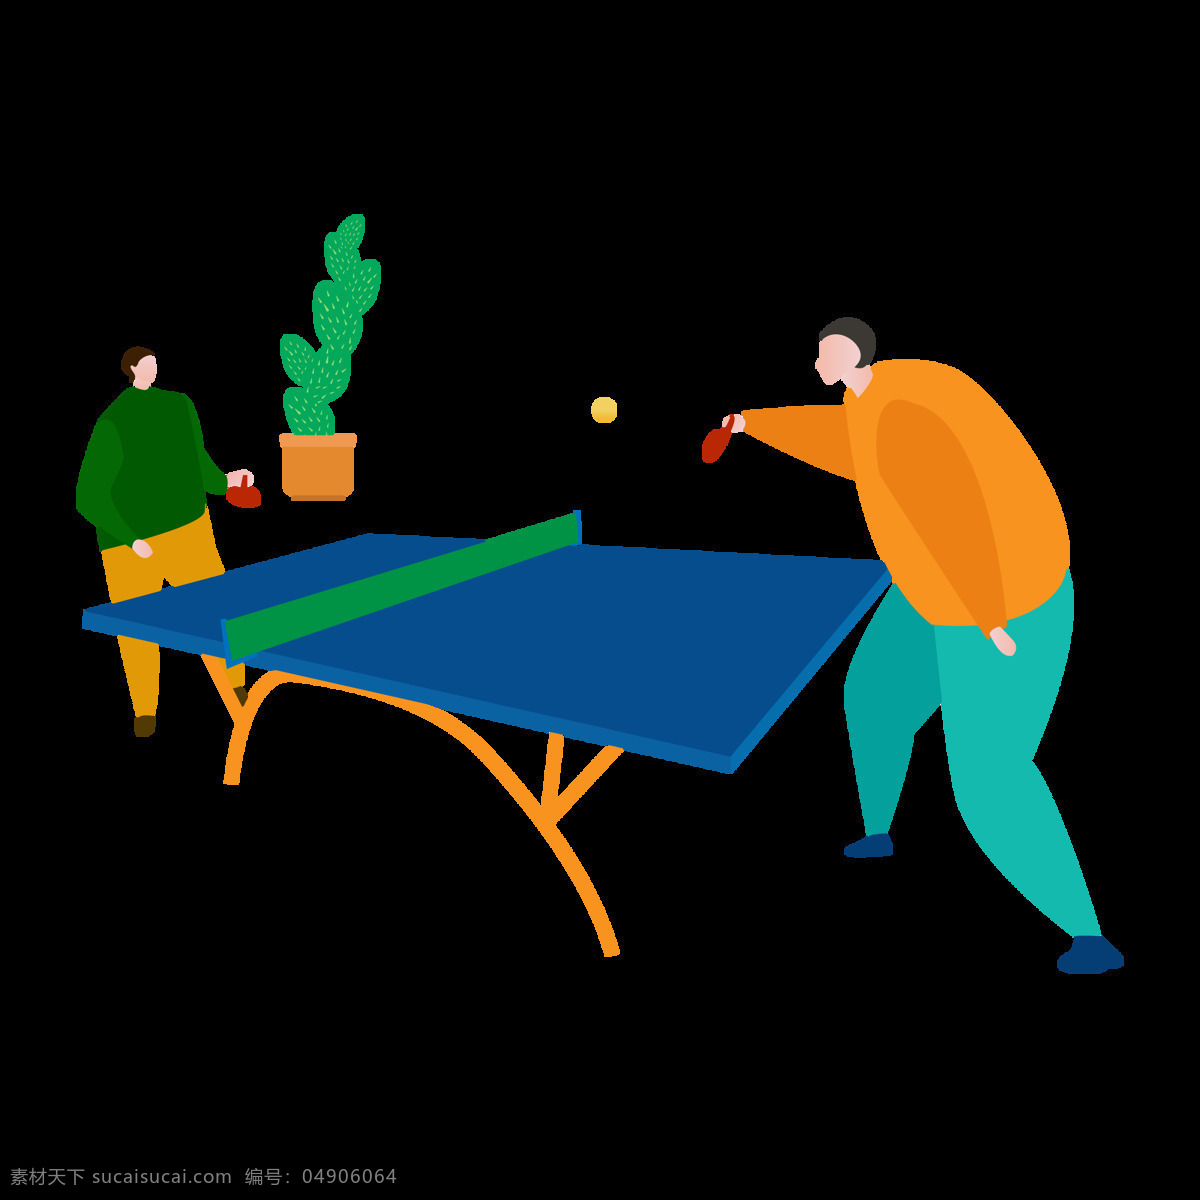 乒乓球 男人 矢量 夸张 扁平化 矢量图 球台 乒乓球拍 卡通画 ppt装饰 植物 绿色 插画 手绘